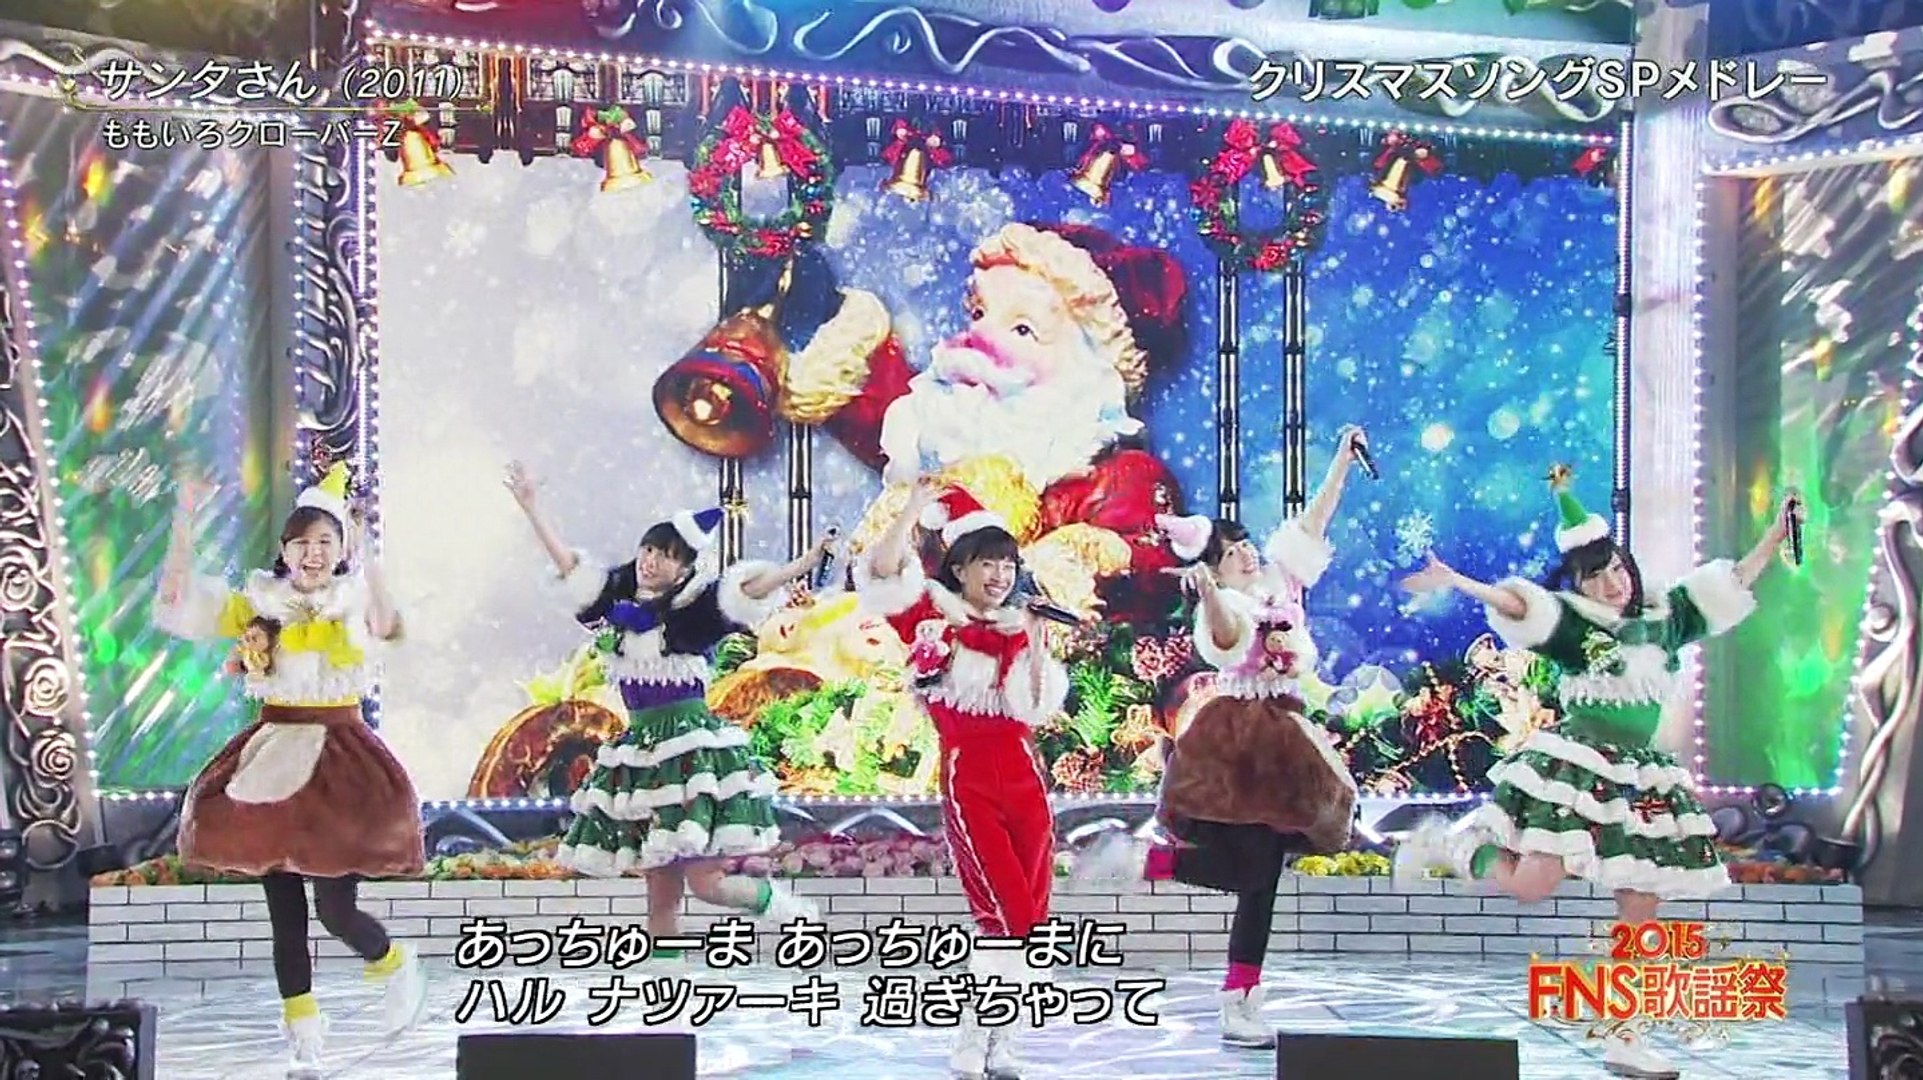 ももいろクローバーｚ 15 Fns歌謡祭 サンタさん 影片 Dailymotion